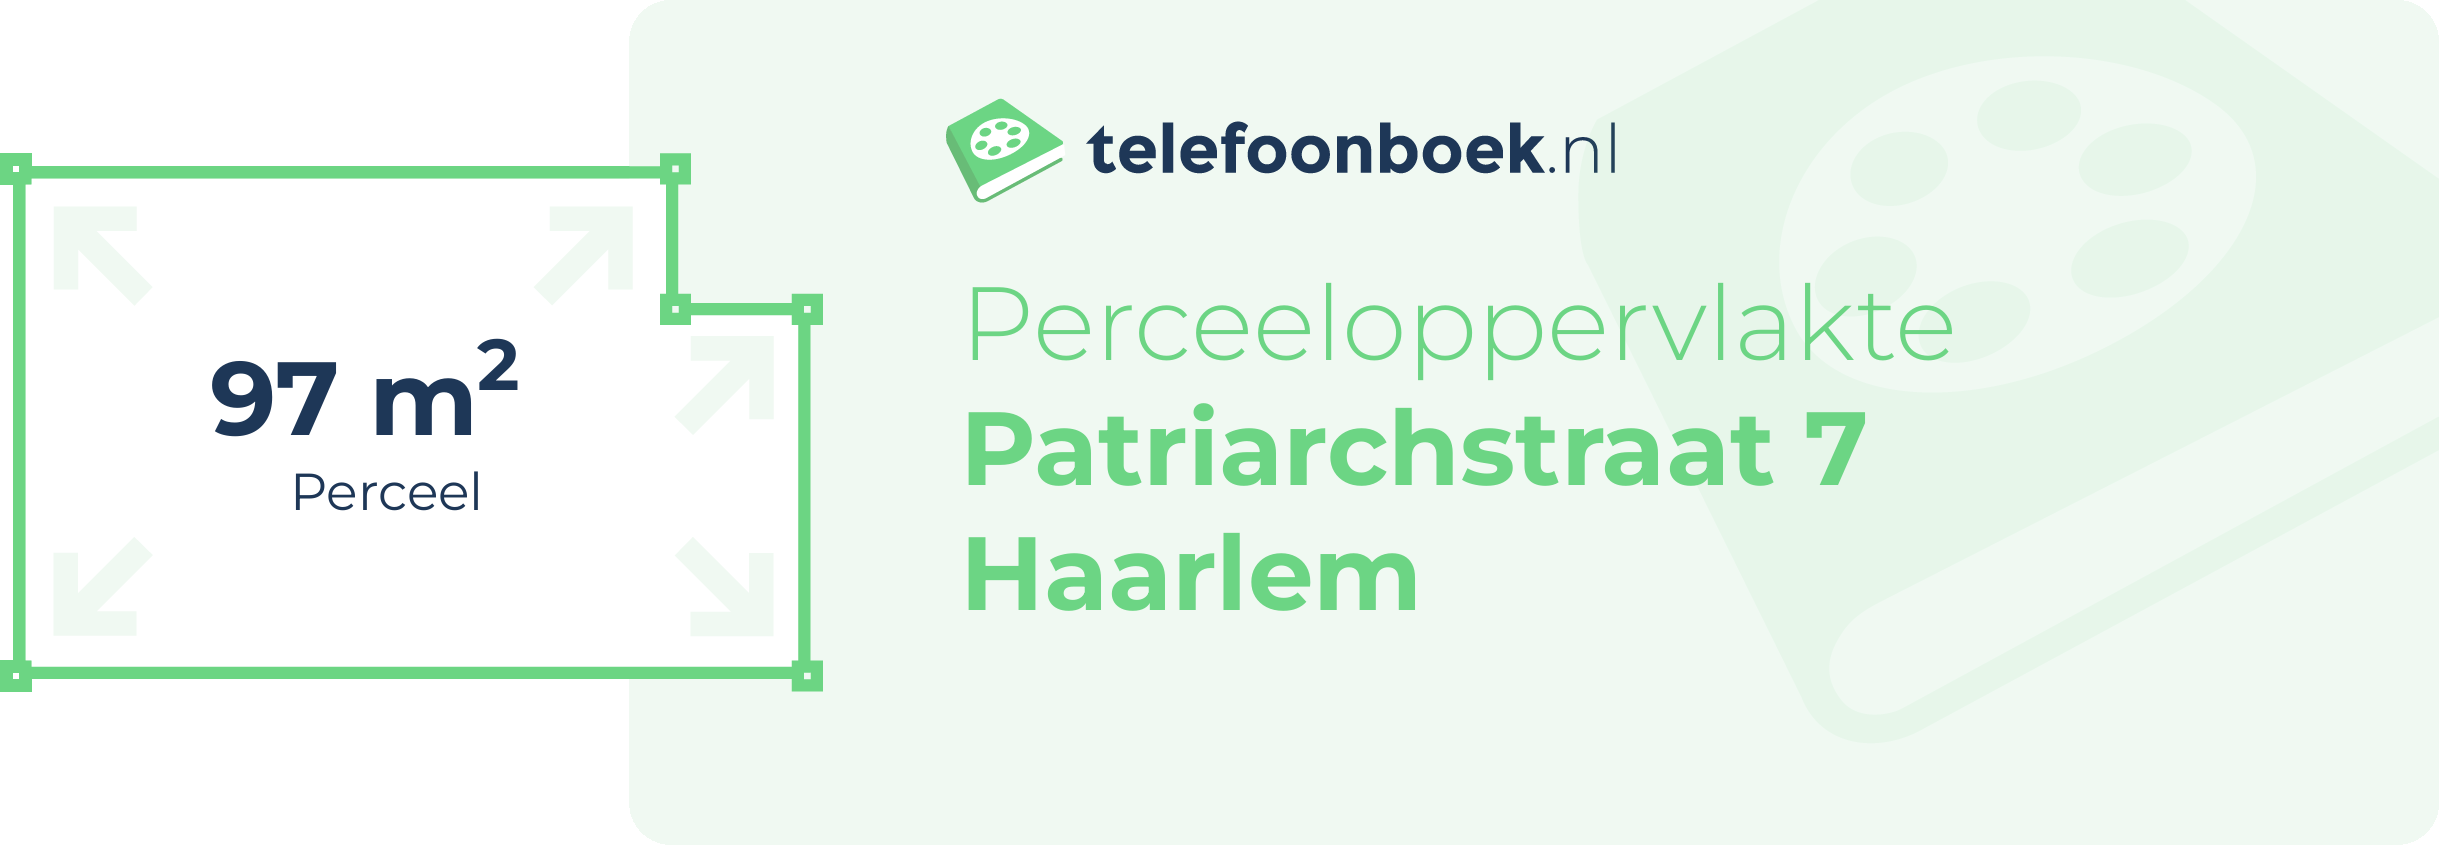 Perceeloppervlakte Patriarchstraat 7 Haarlem